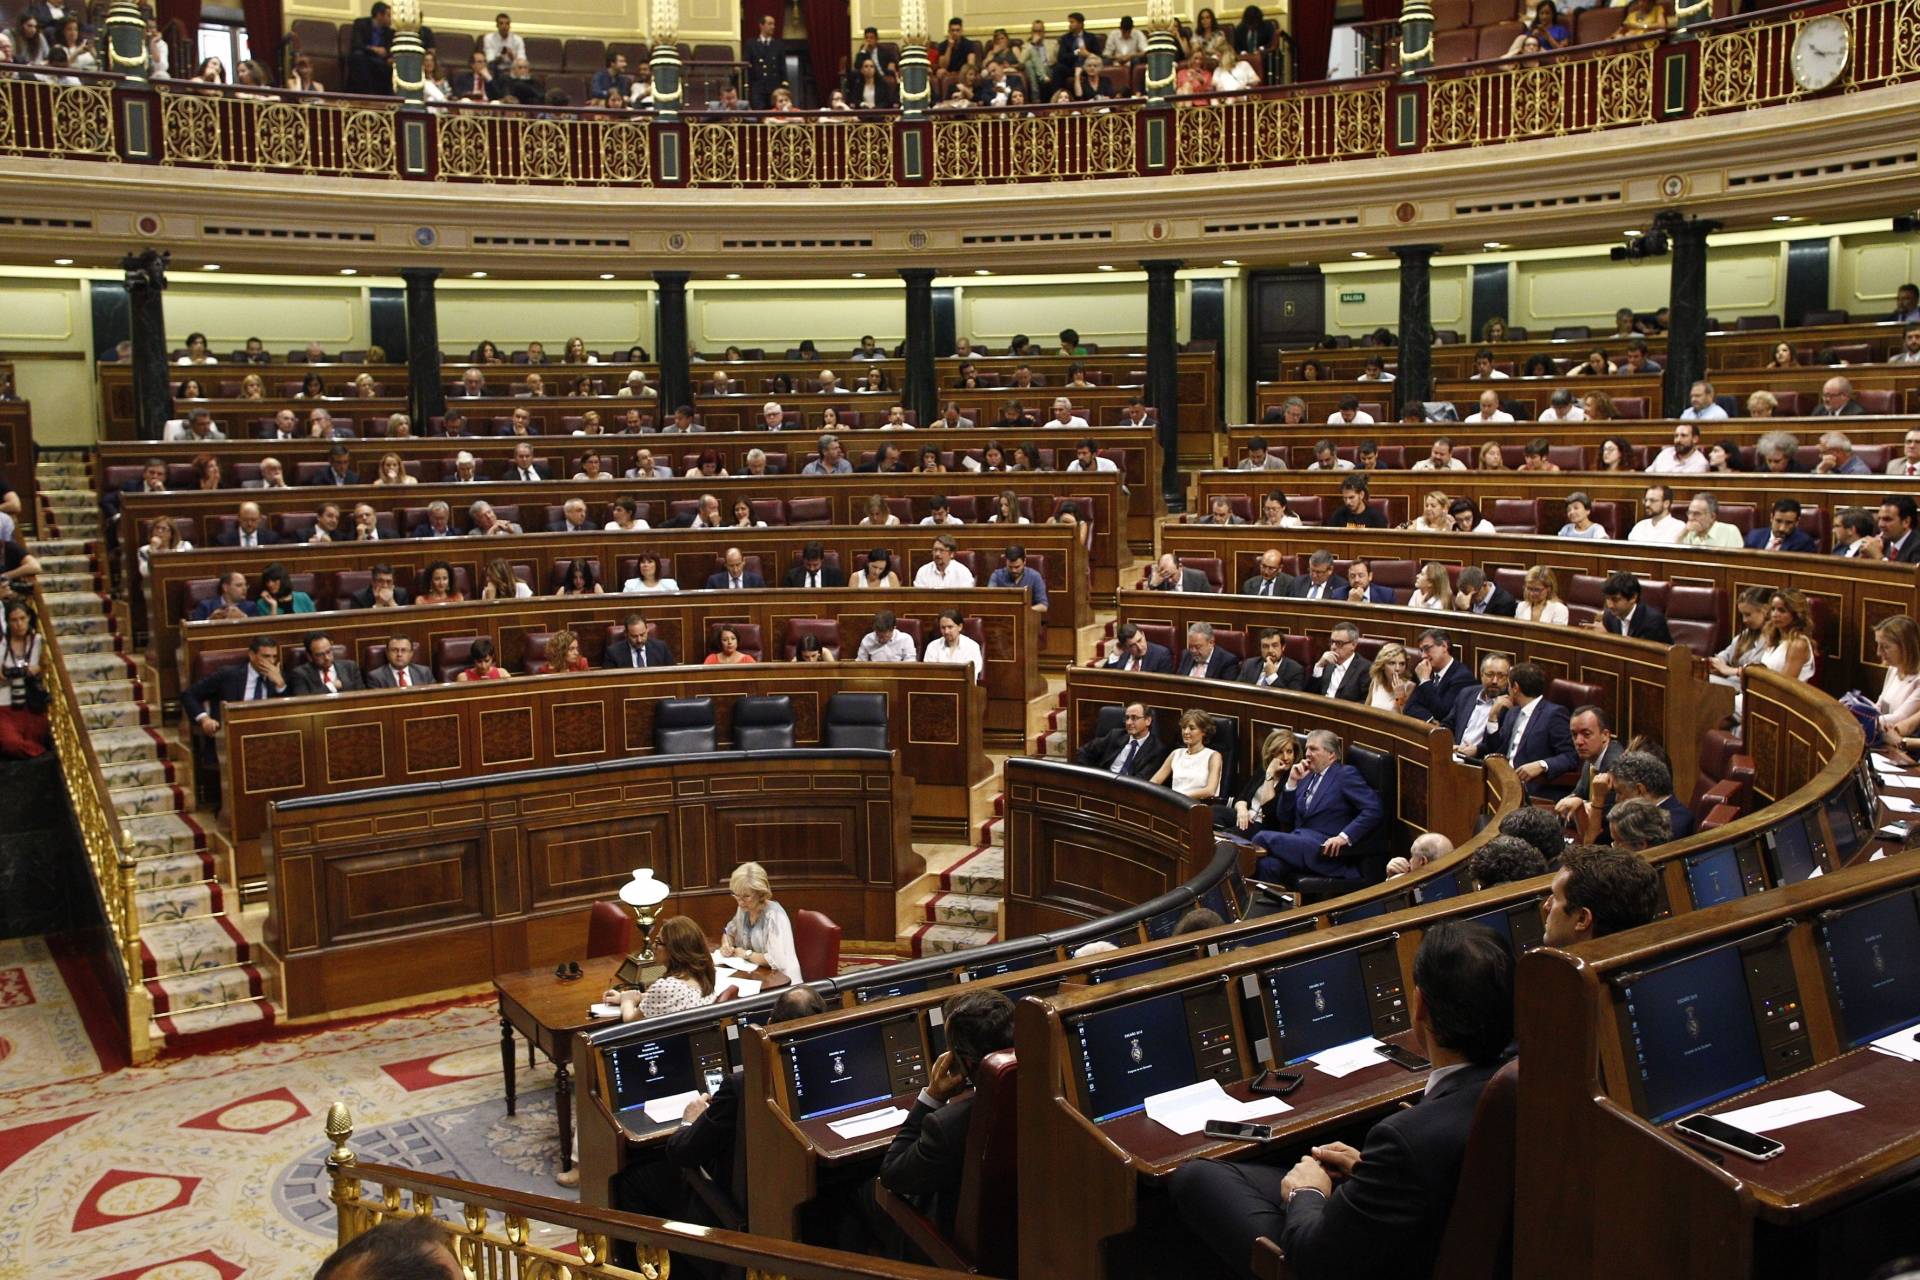 Derogar la reforma laboral, la última petición del Congreso a Mariano Rajoy